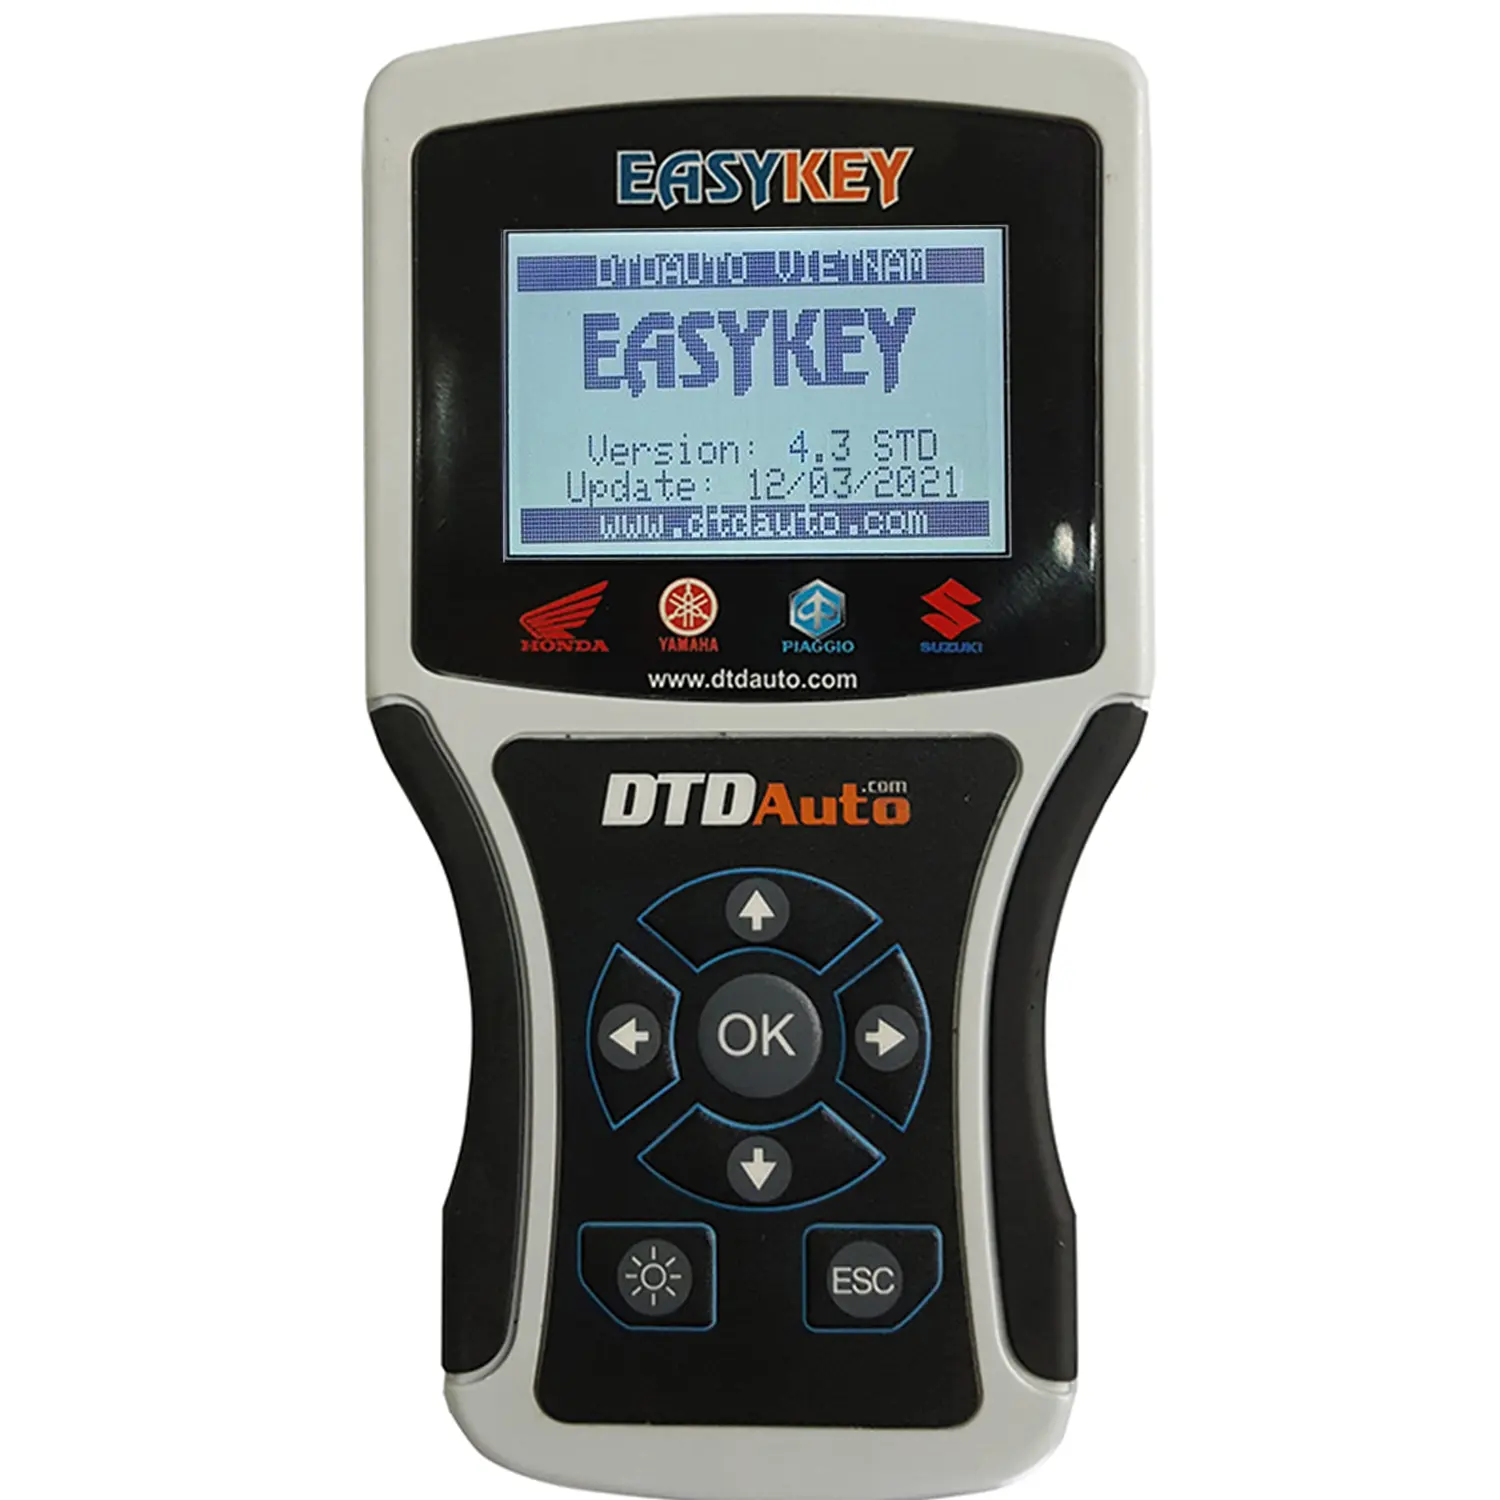 Lập trình viên chìa khóa xe máy easykey sử dụng bộ chuyển đổi để điều chỉnh đồng hồ ODO điện tử, khôi phục dữ liệu ODO gốc bằng cáp ODO